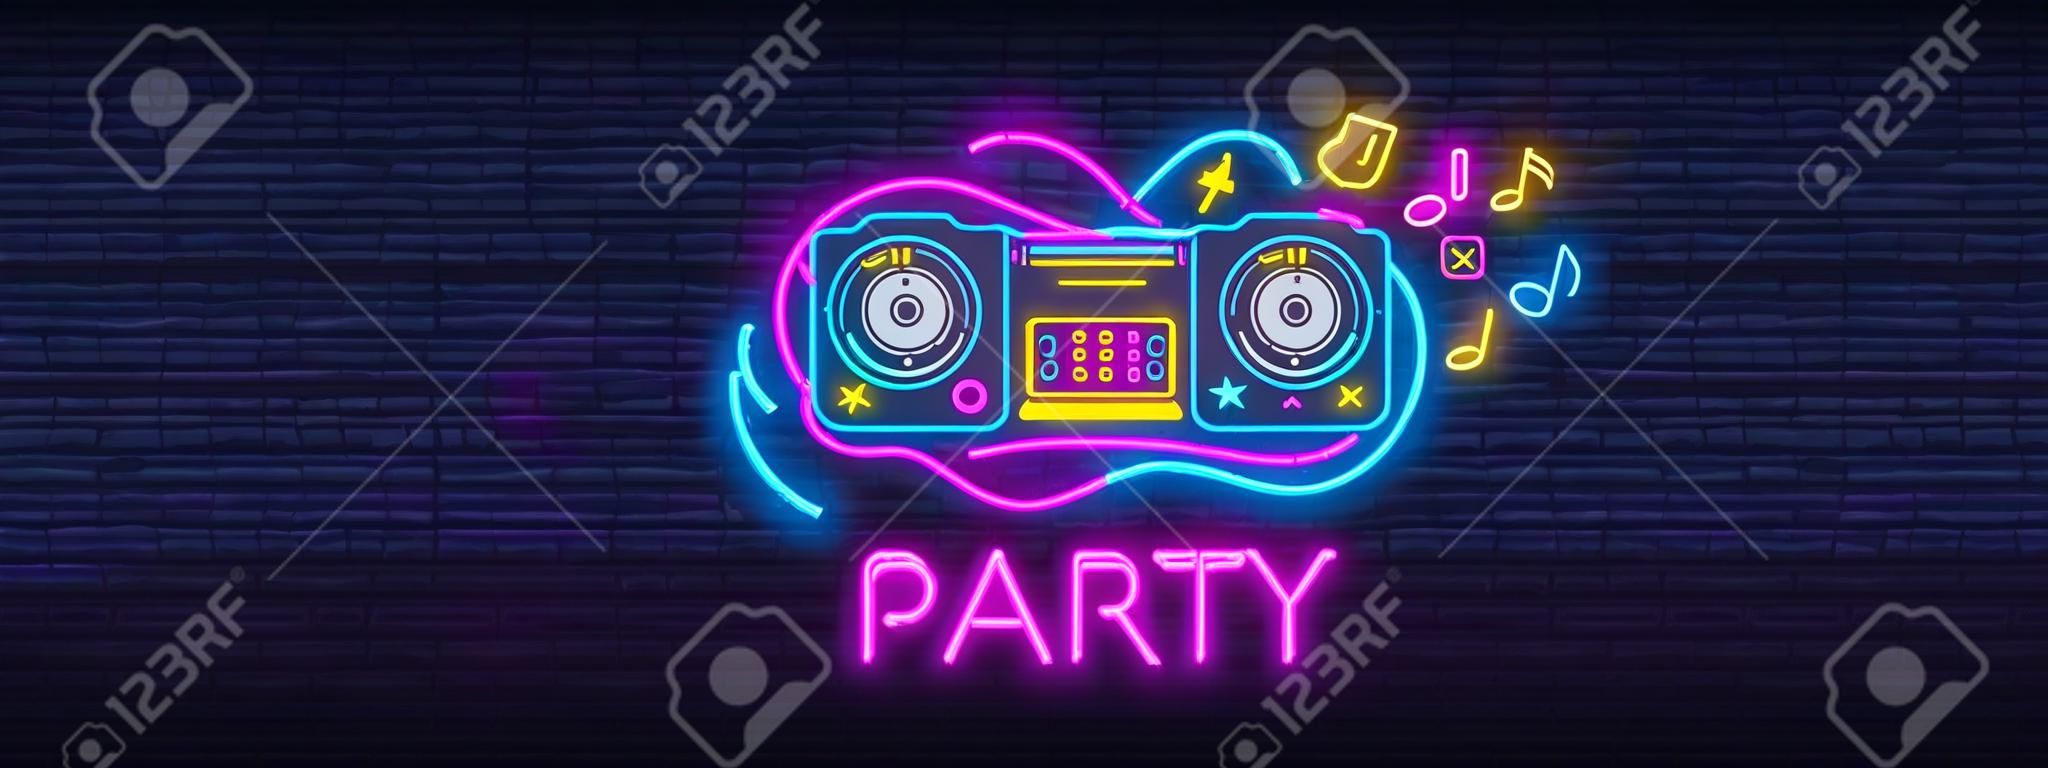 DJ Music Party Neon Sign Collection Vektor-Design-Vorlage. DJ-Konzept von Musik, Radio und Live-Konzert, Neon-Poster, Lichtbanner-Designelement bunt, nachthelle Werbung. Vektor